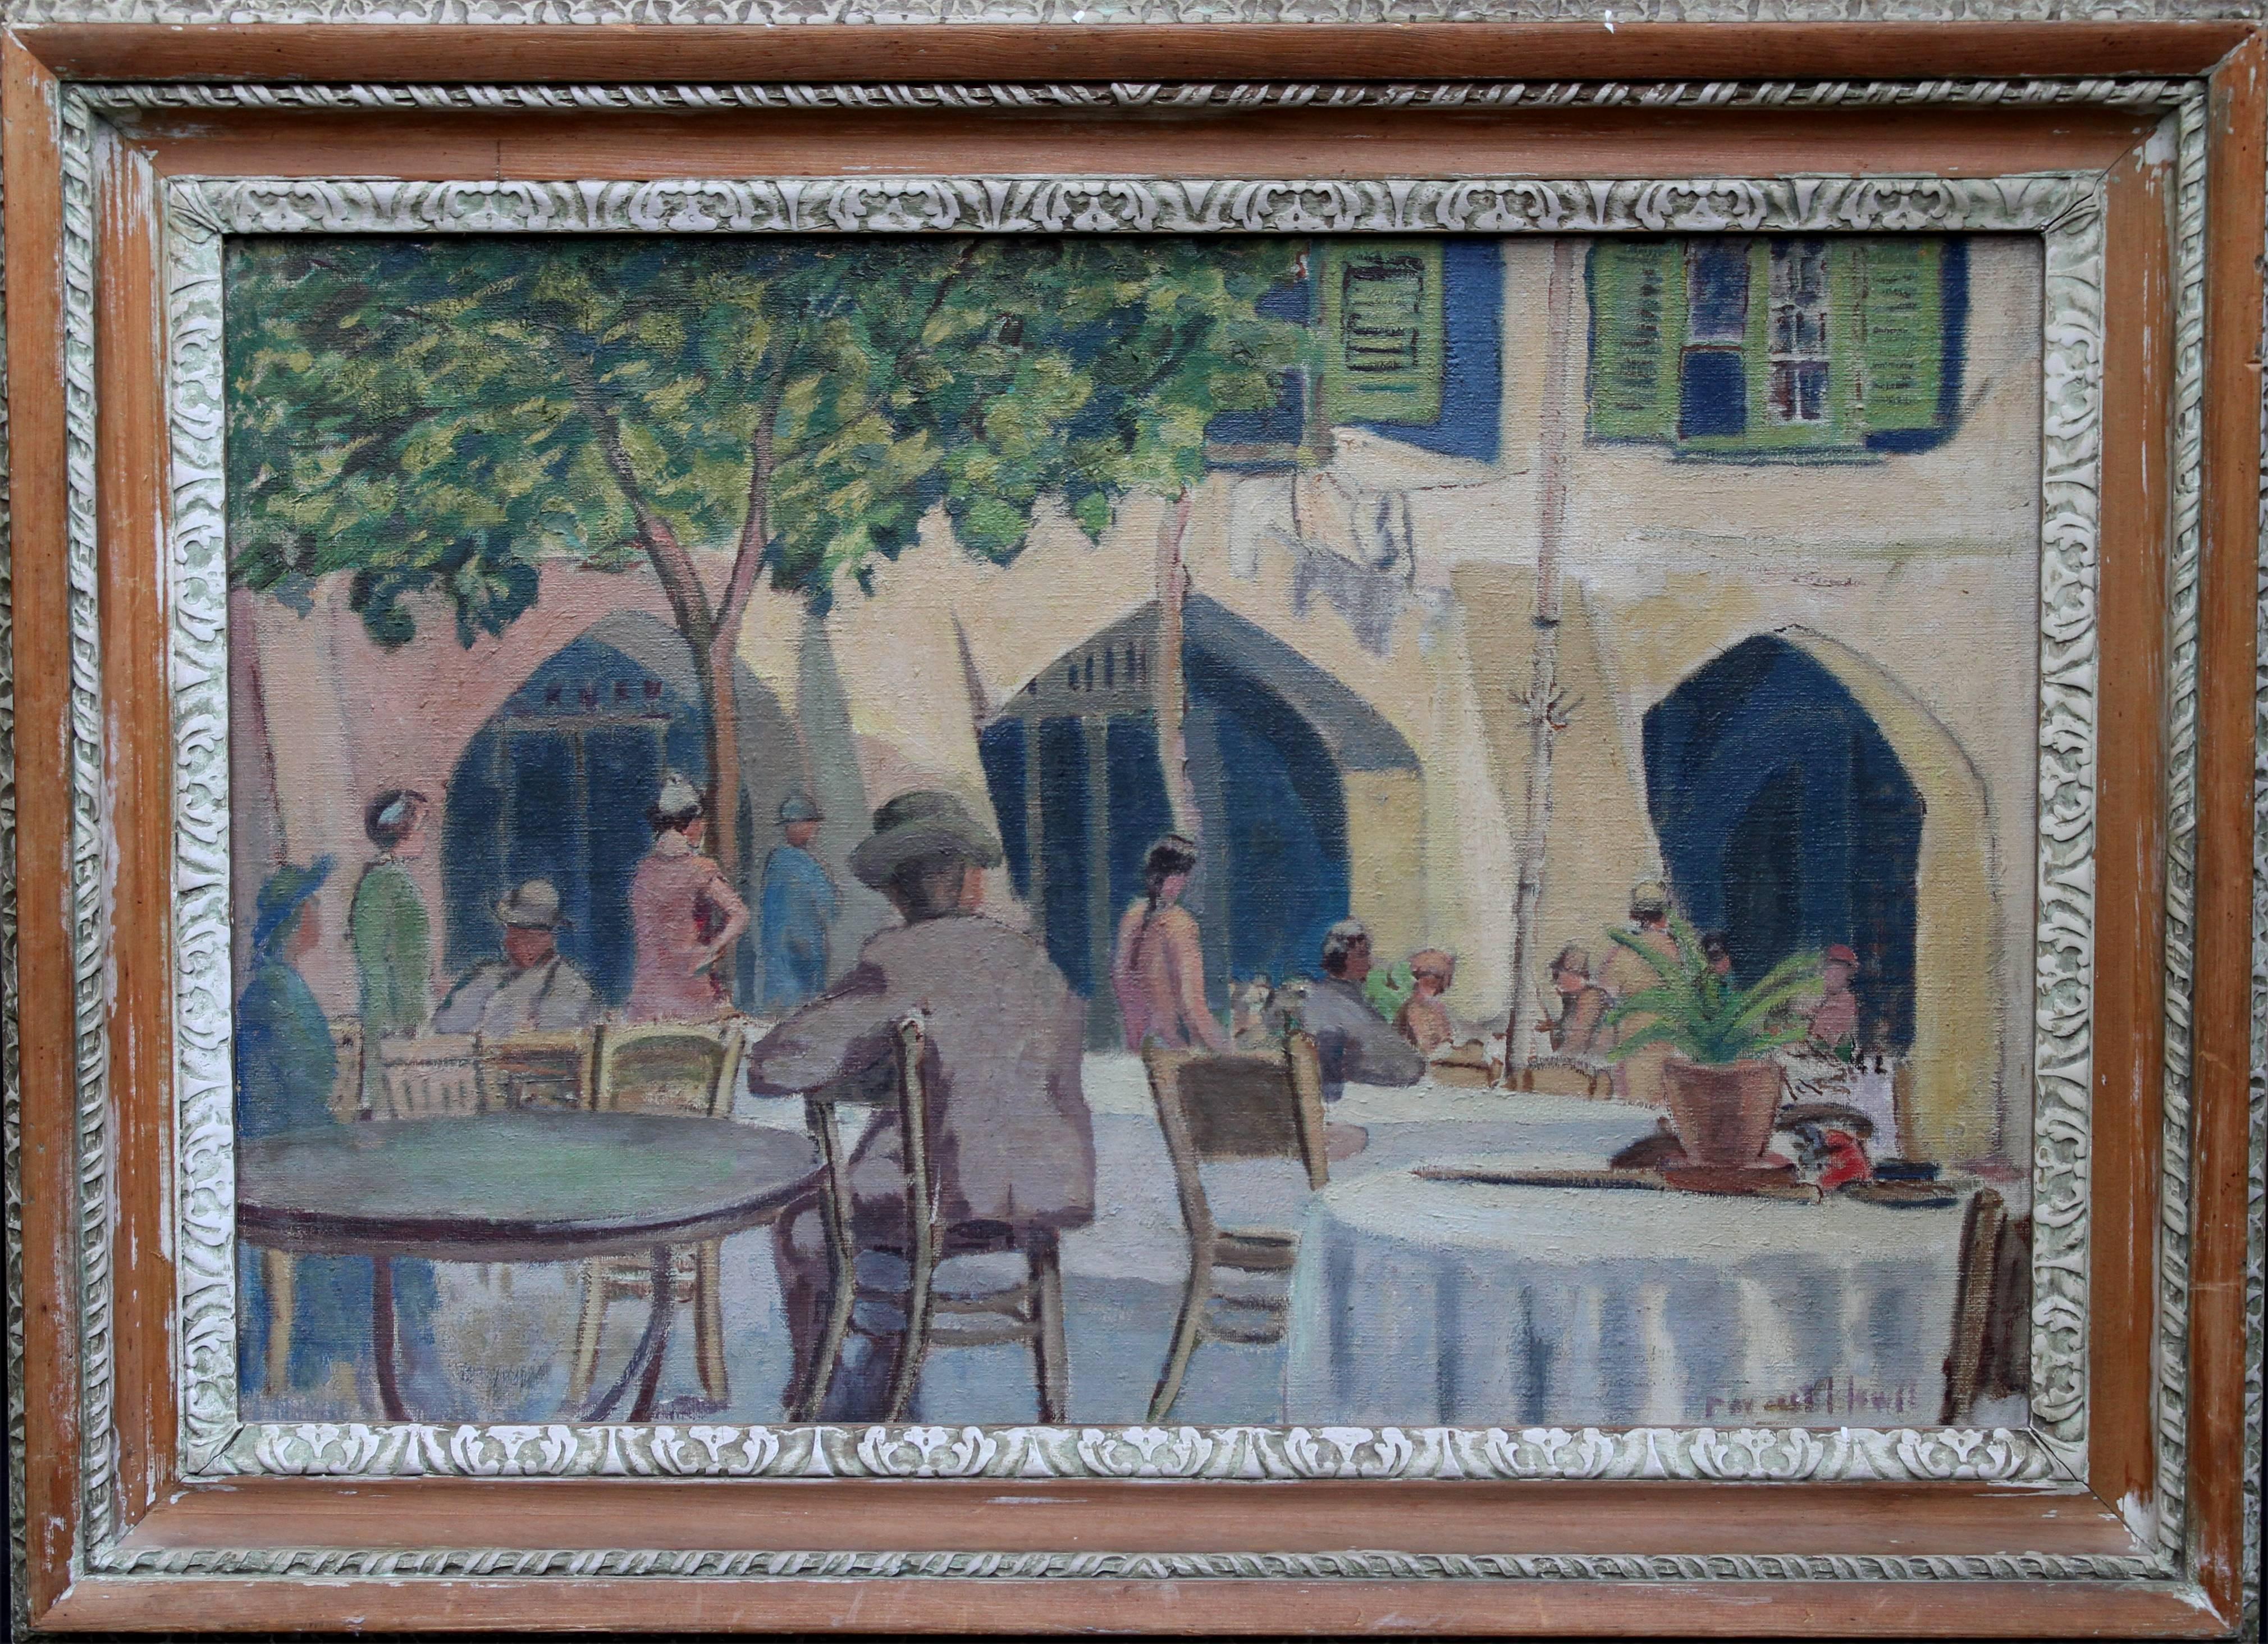 Forrest Hewit Figurative Painting – Cafe Porto Fino Italien – britisches postimpressionistisches Ölgemälde der italienischen Riviera